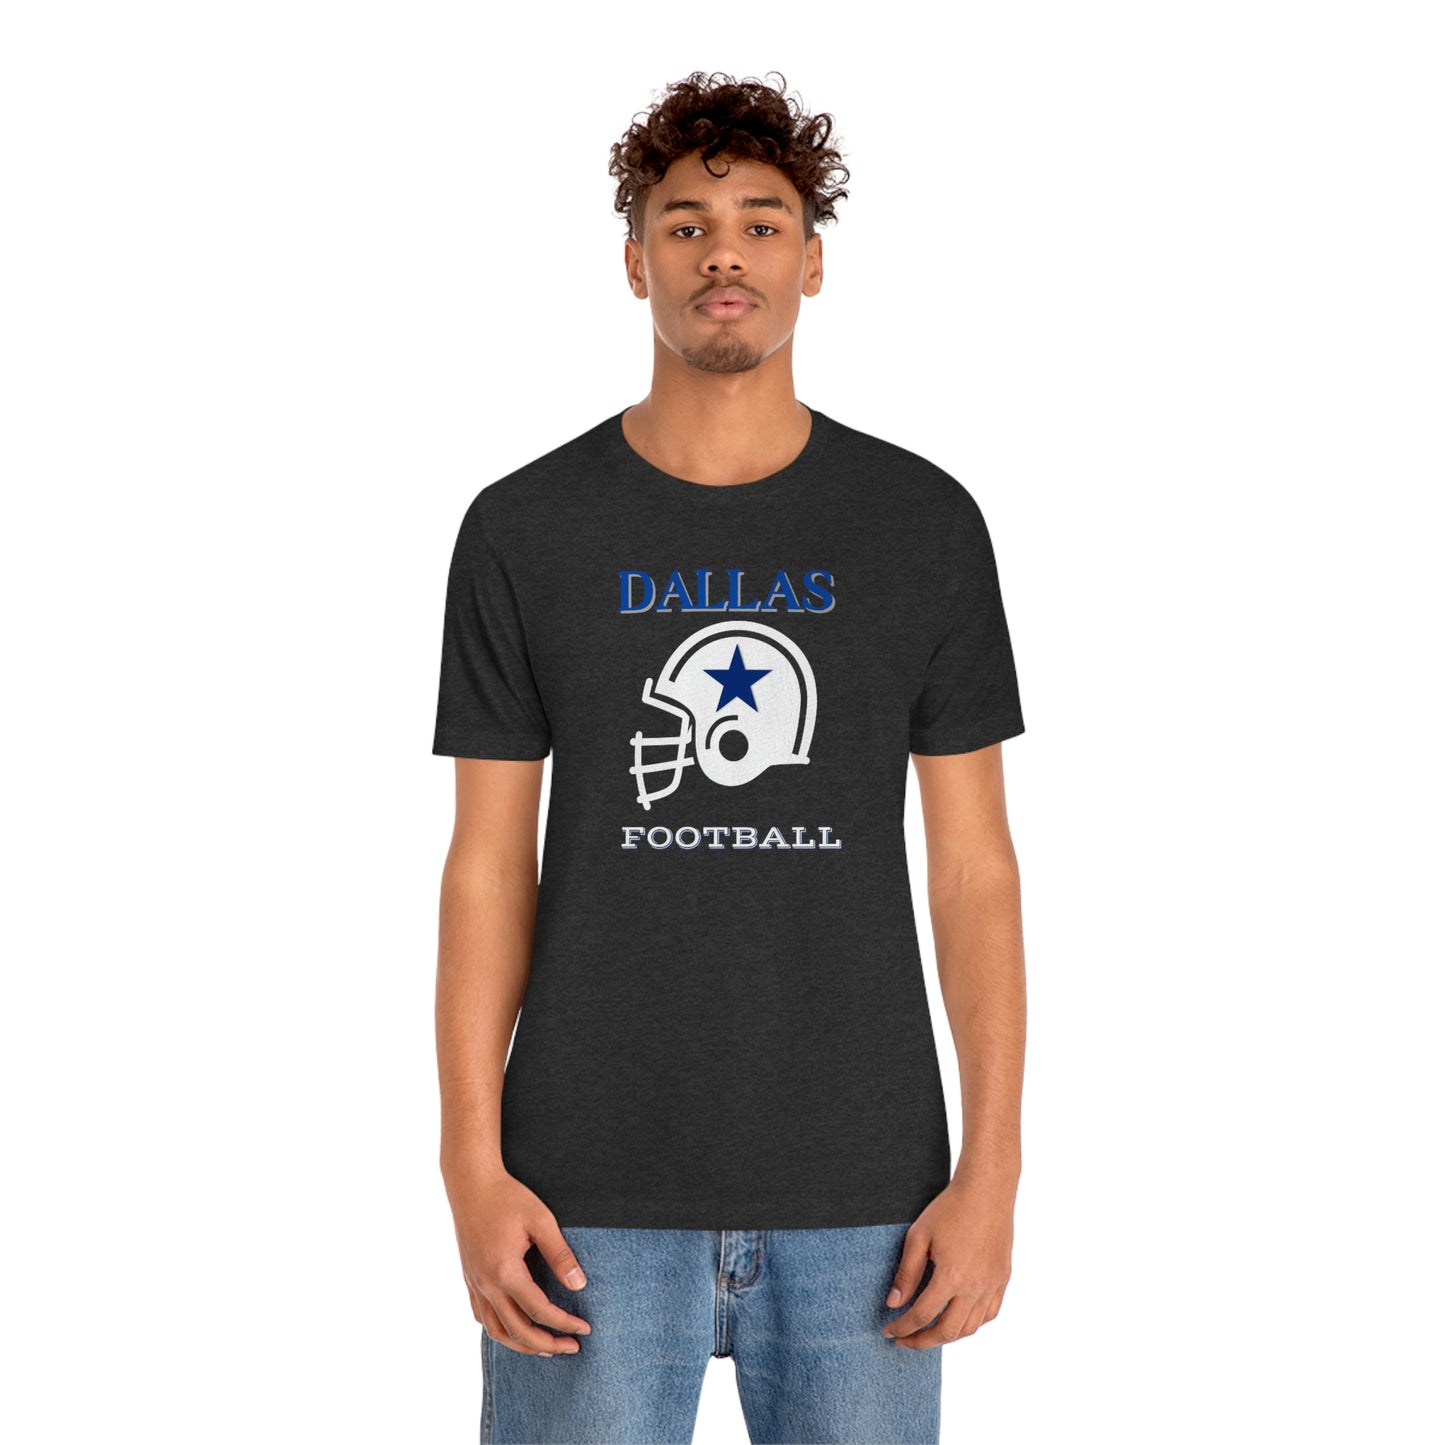 Unisex Jersey Short Sleeve Tee: Dallas Football